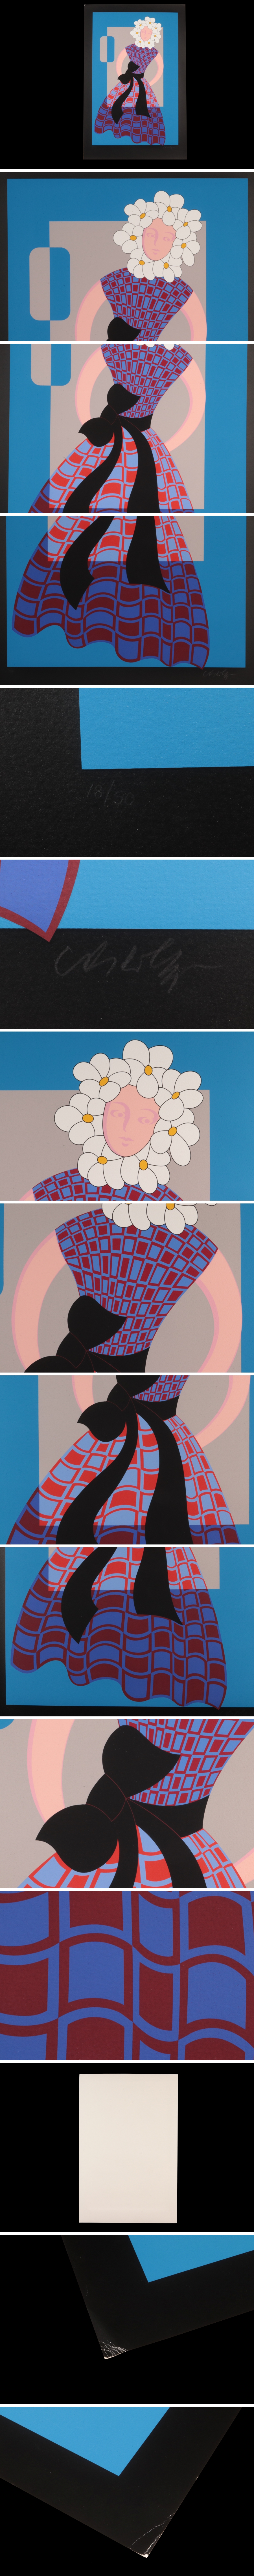 新品最新作絵画 真作保証 ヴィクトル・ヴァザルリ「花飾りの少女」シルクスクリーン 18/50 直筆サイン オプ・アート 大判 骨董品 美術品 7634ocgz シルクスクリーン